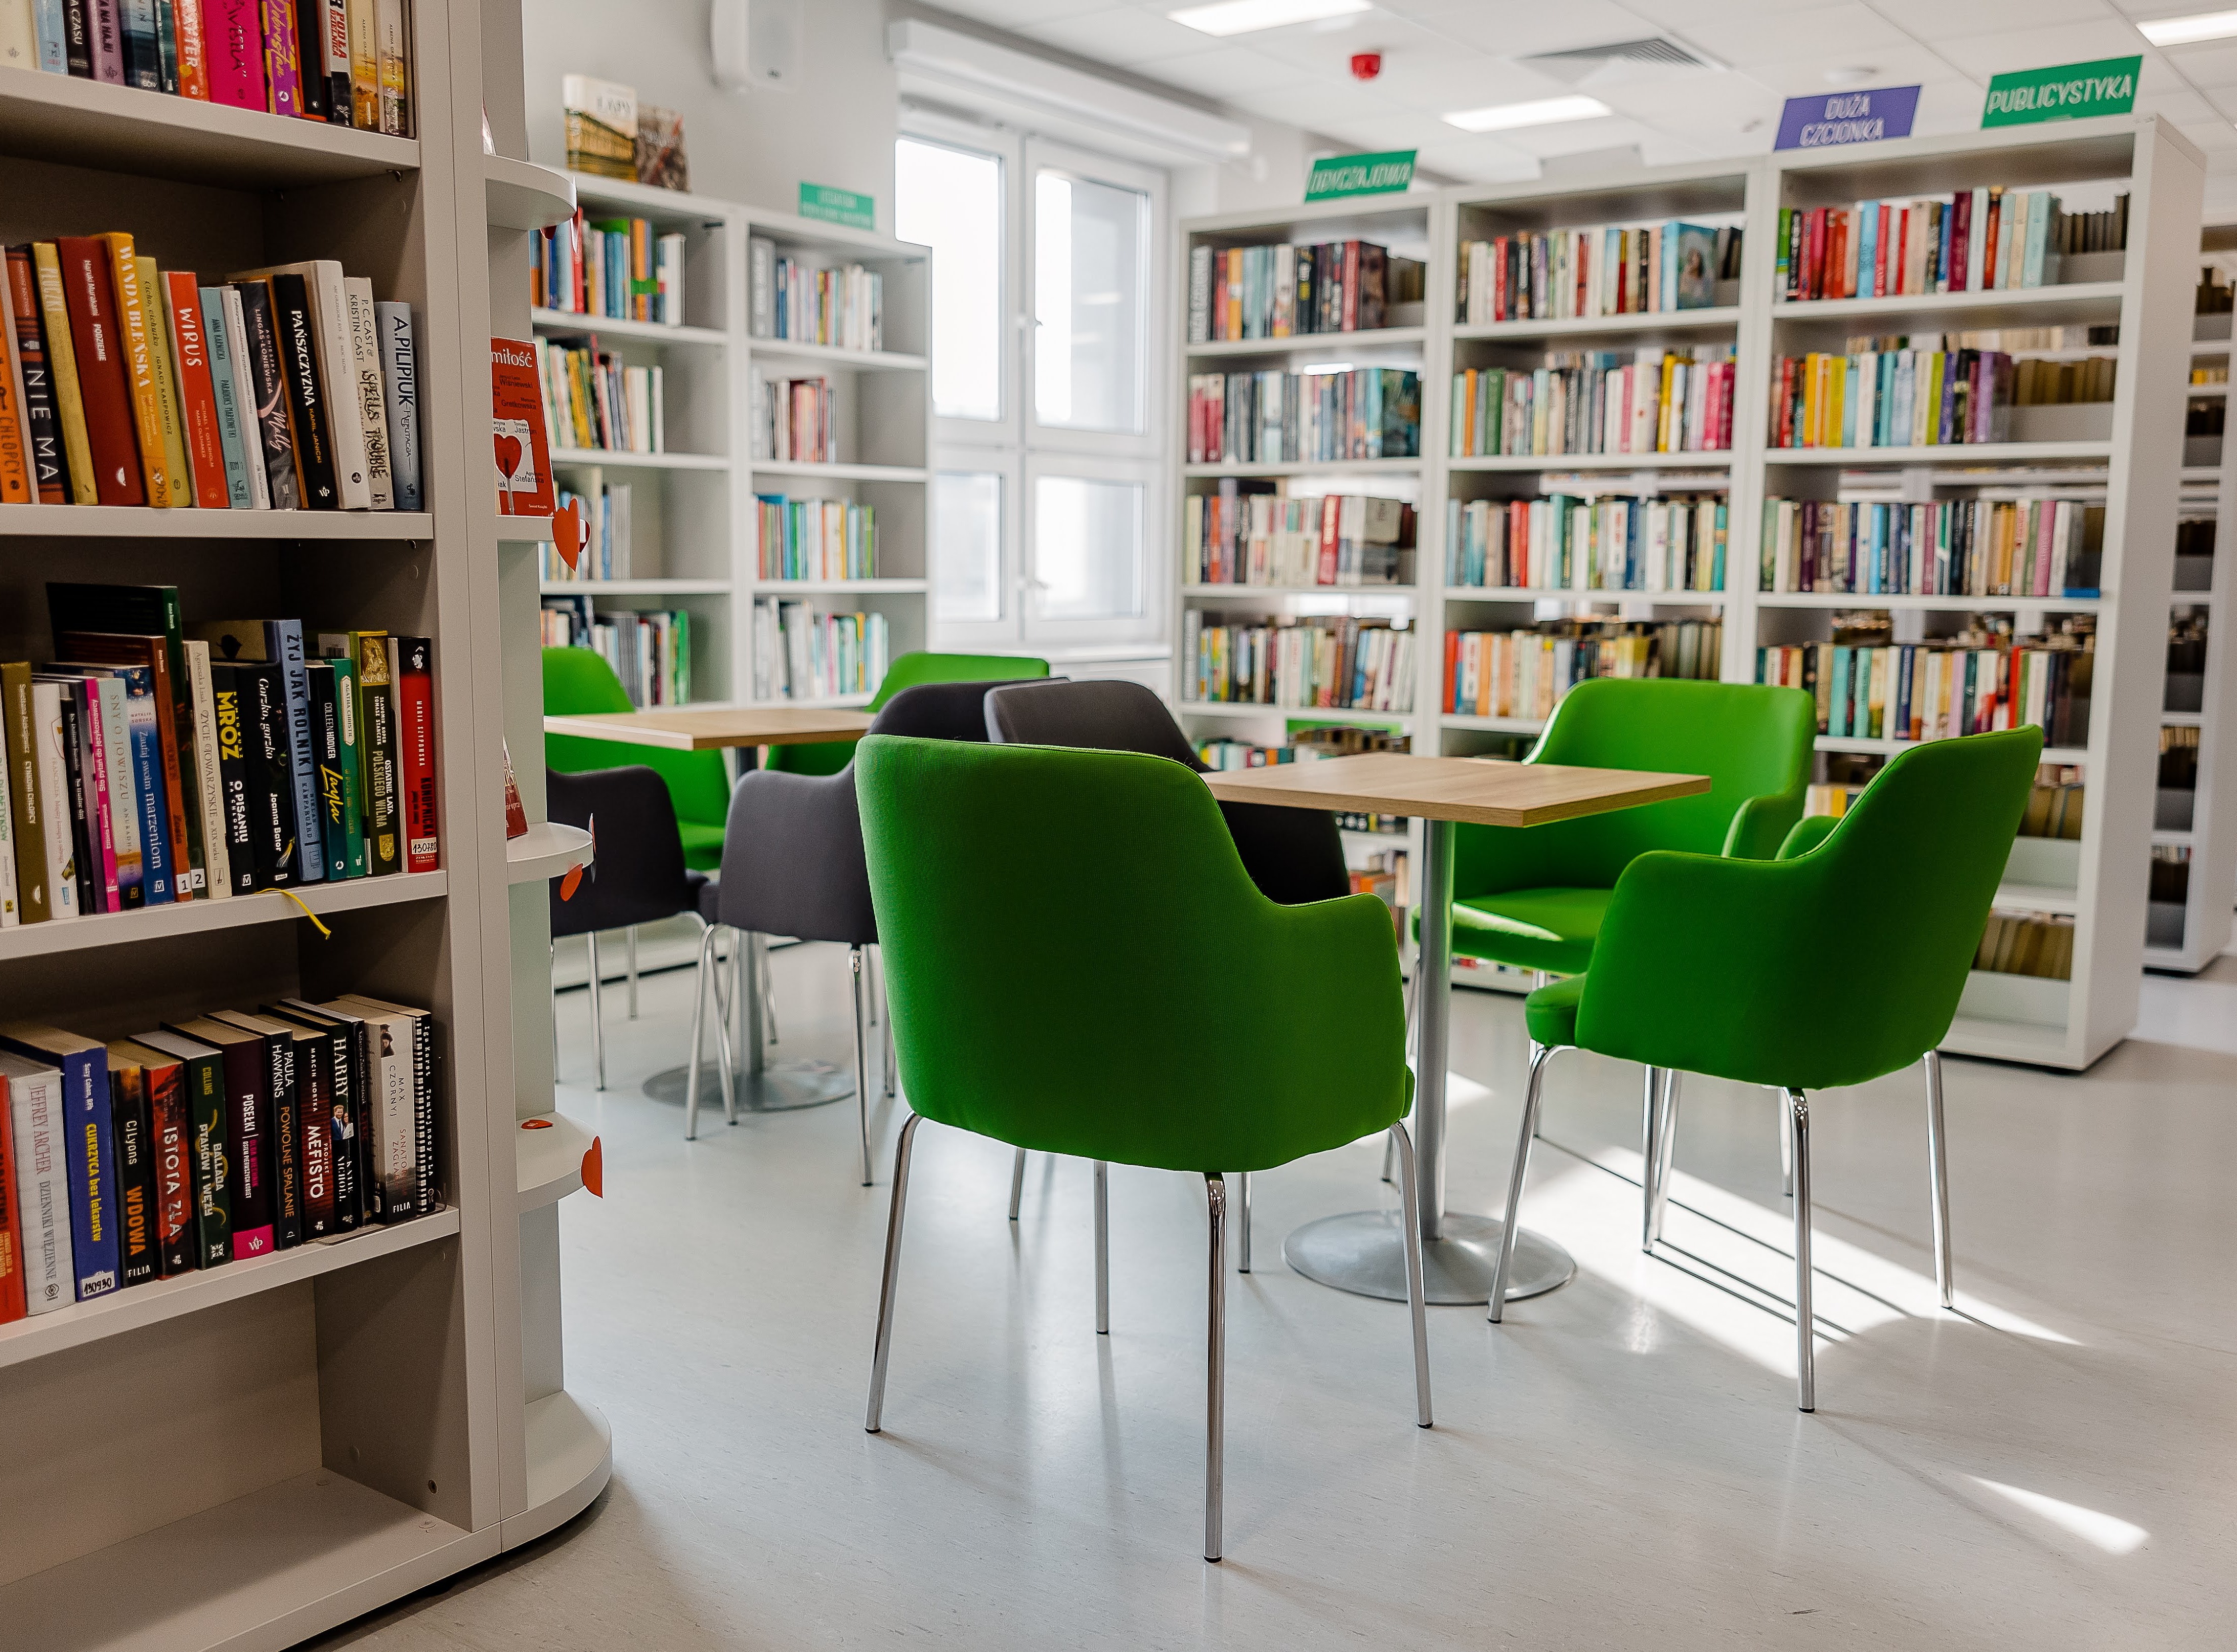 Zielone krzesła w pomieszczeniu wypełnionym półkami z książkami